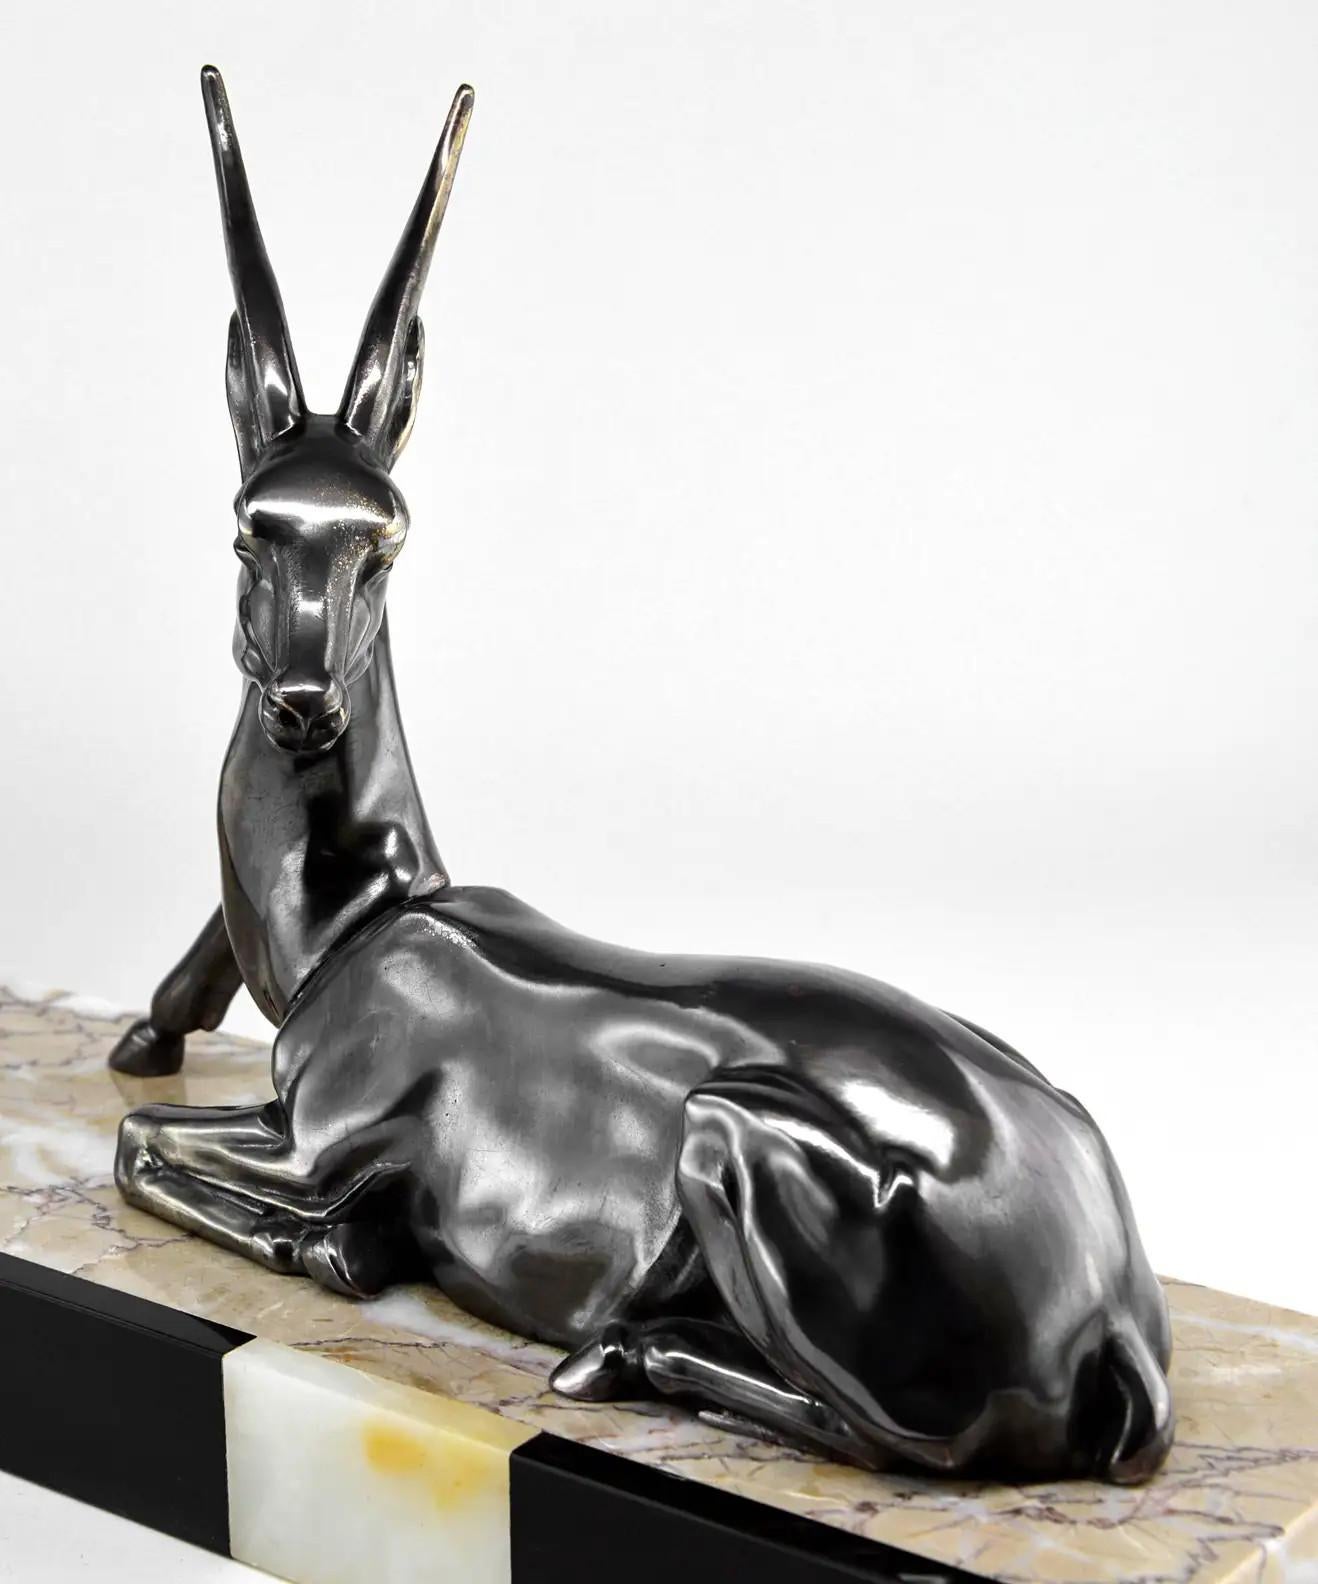 Sculpture d'antilope, France, années 1930. Spelter, marbre et onyx. Mesures : largeur 45 cm, hauteur 24 cm.